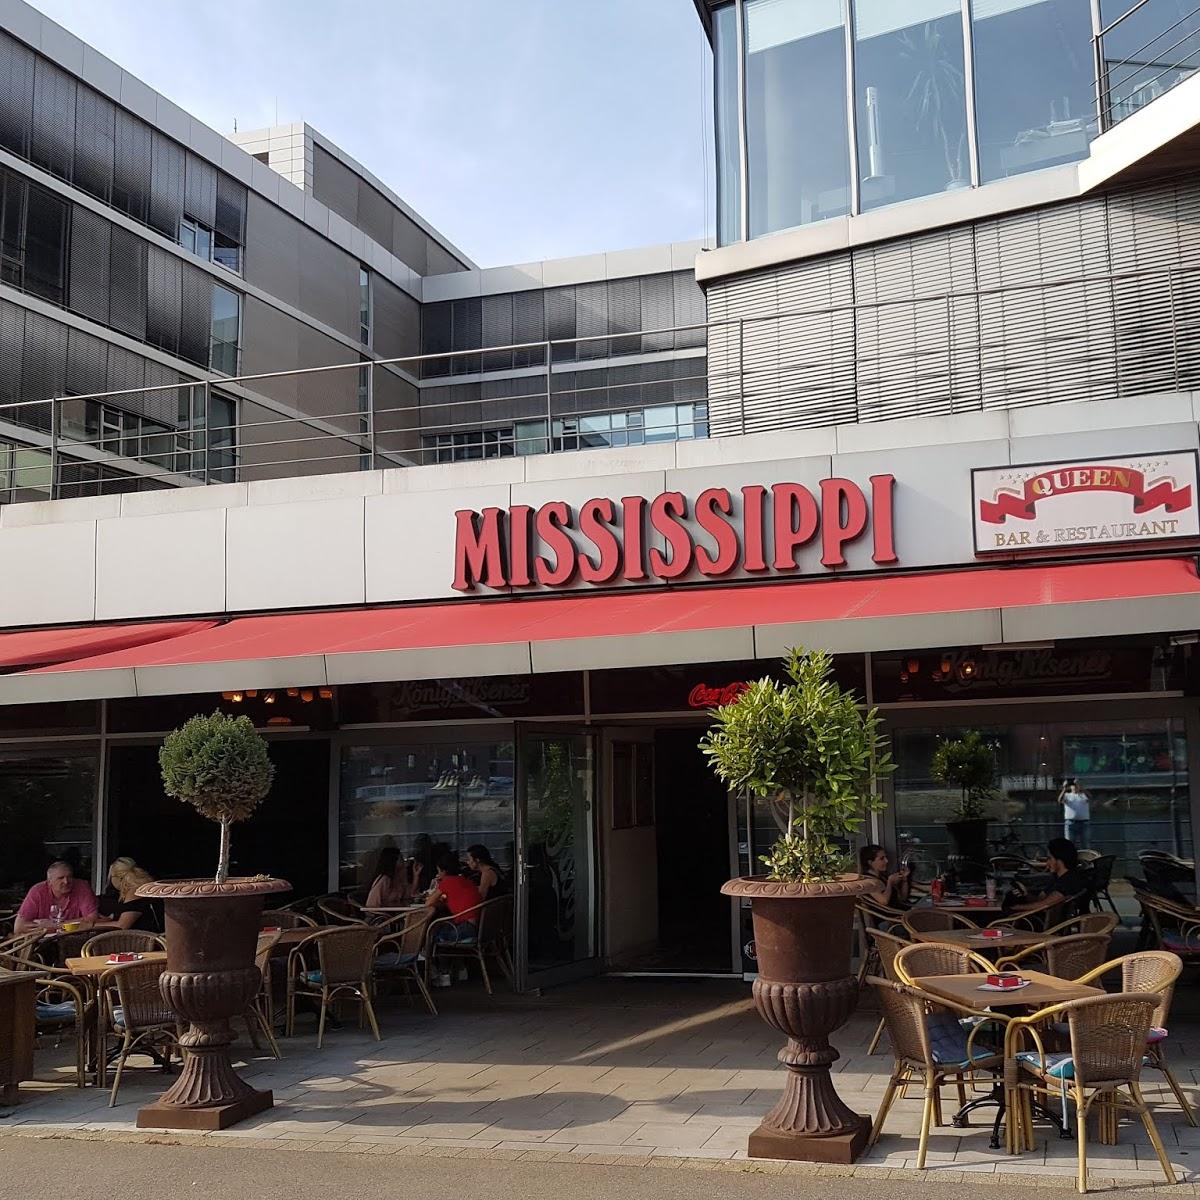 Restaurant "Mississippi Innenhafen" in Duisburg